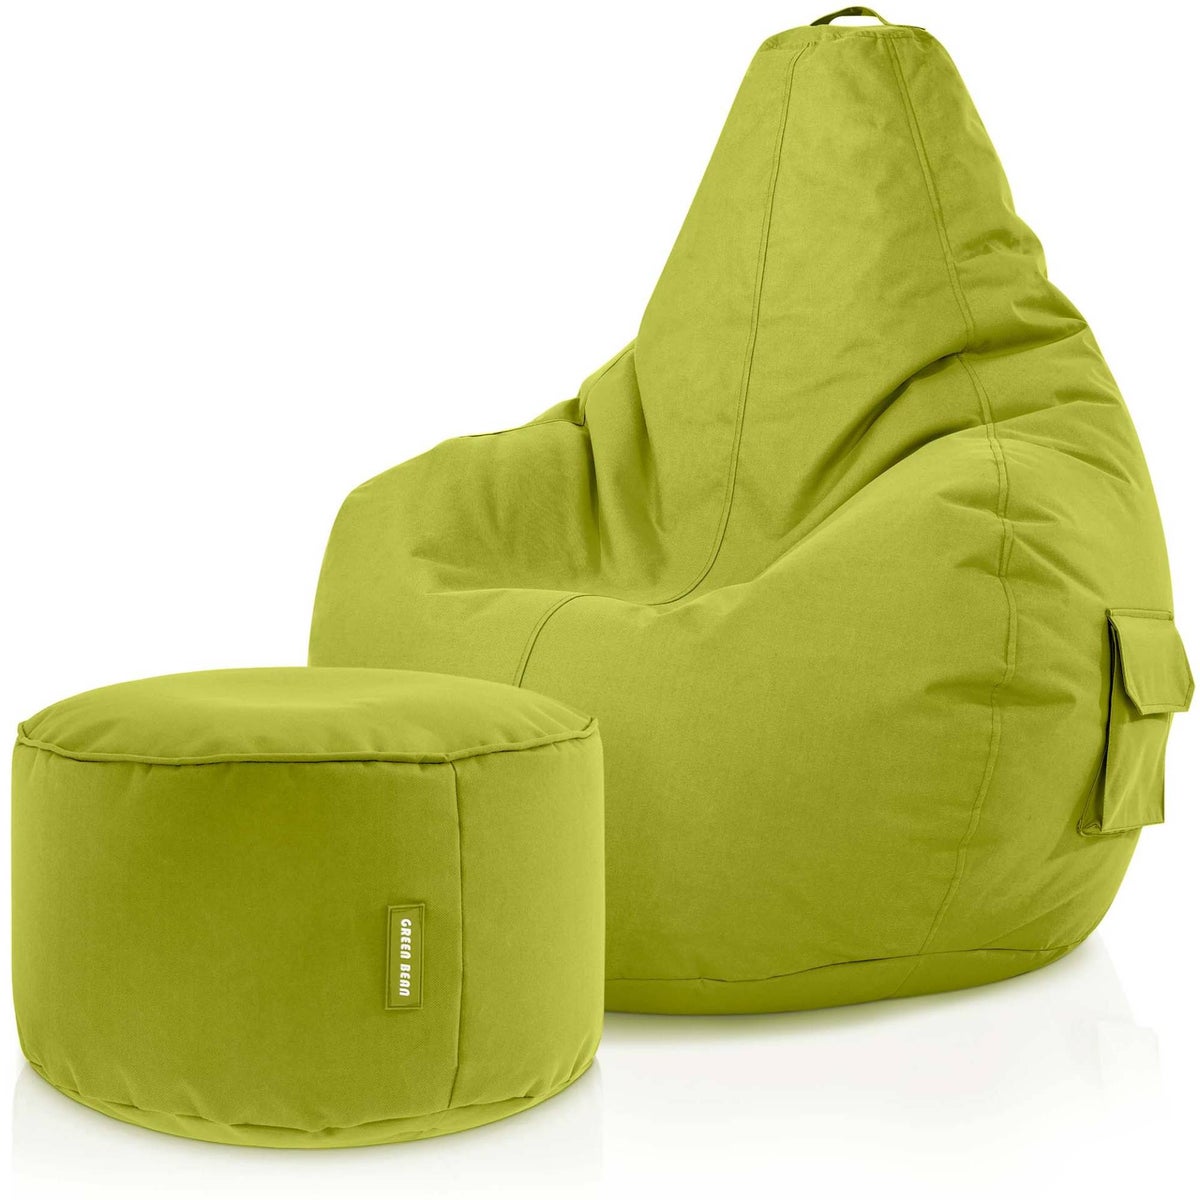 Green Bean© 2er Set Sitzsack + Hocker - fertig befüllt - robust waschbar schmutzabweisend - Kinder &amp; Erwachsene Bean Bag Bodenkissen Lounge Sitzhocker Relax-Sessel Gamer Gamingstuhl Pouf - Grün